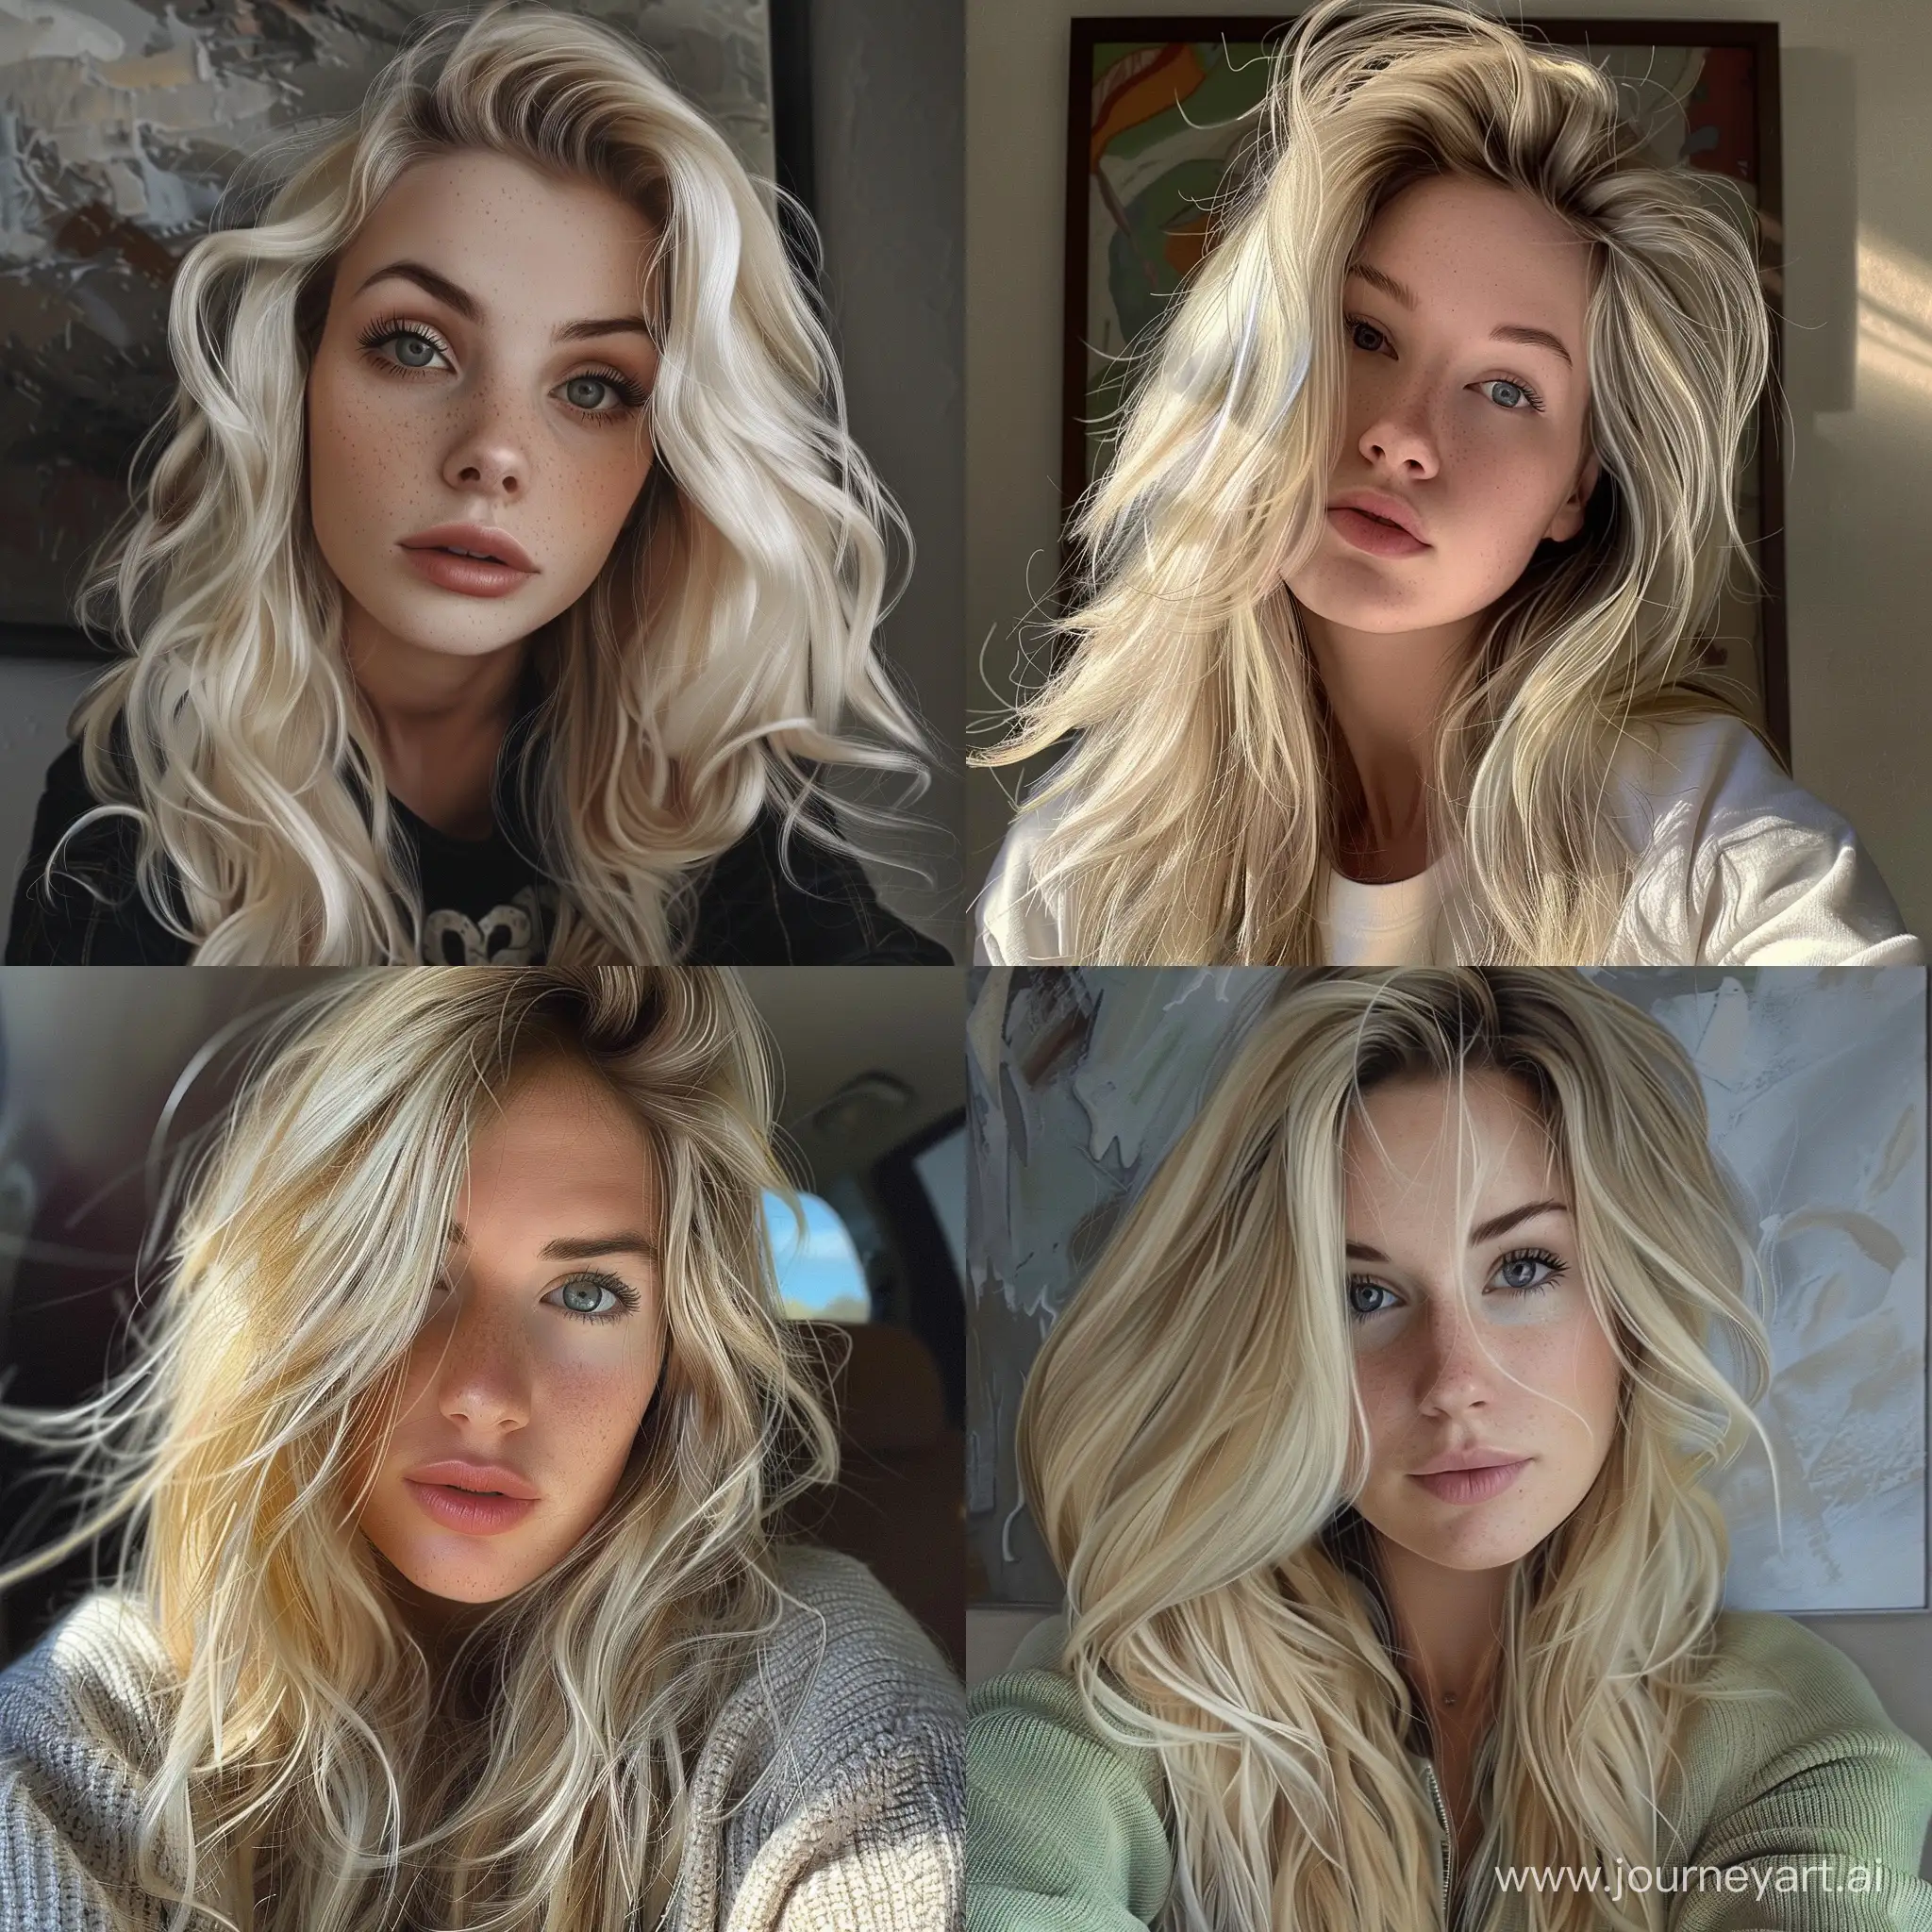 Photorealism blonde woman selfie